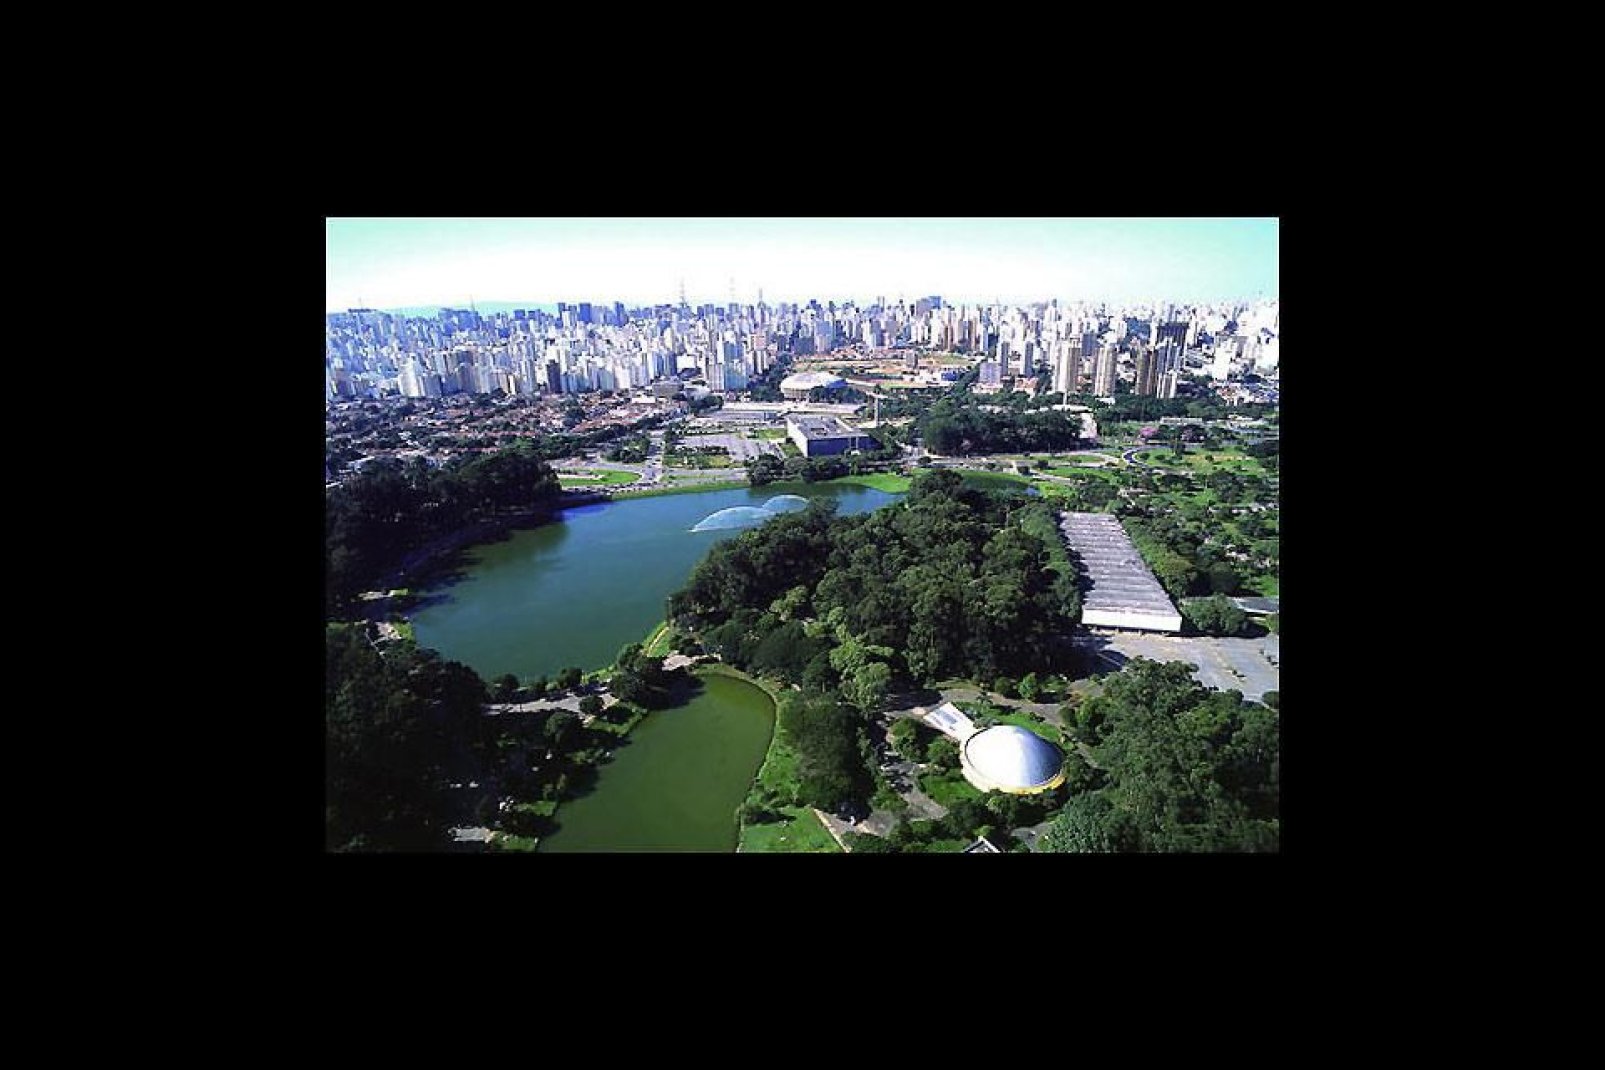 È il più grande parco pubblico della città, con 1,5 milioni di metri quadrati di spazi verdi.